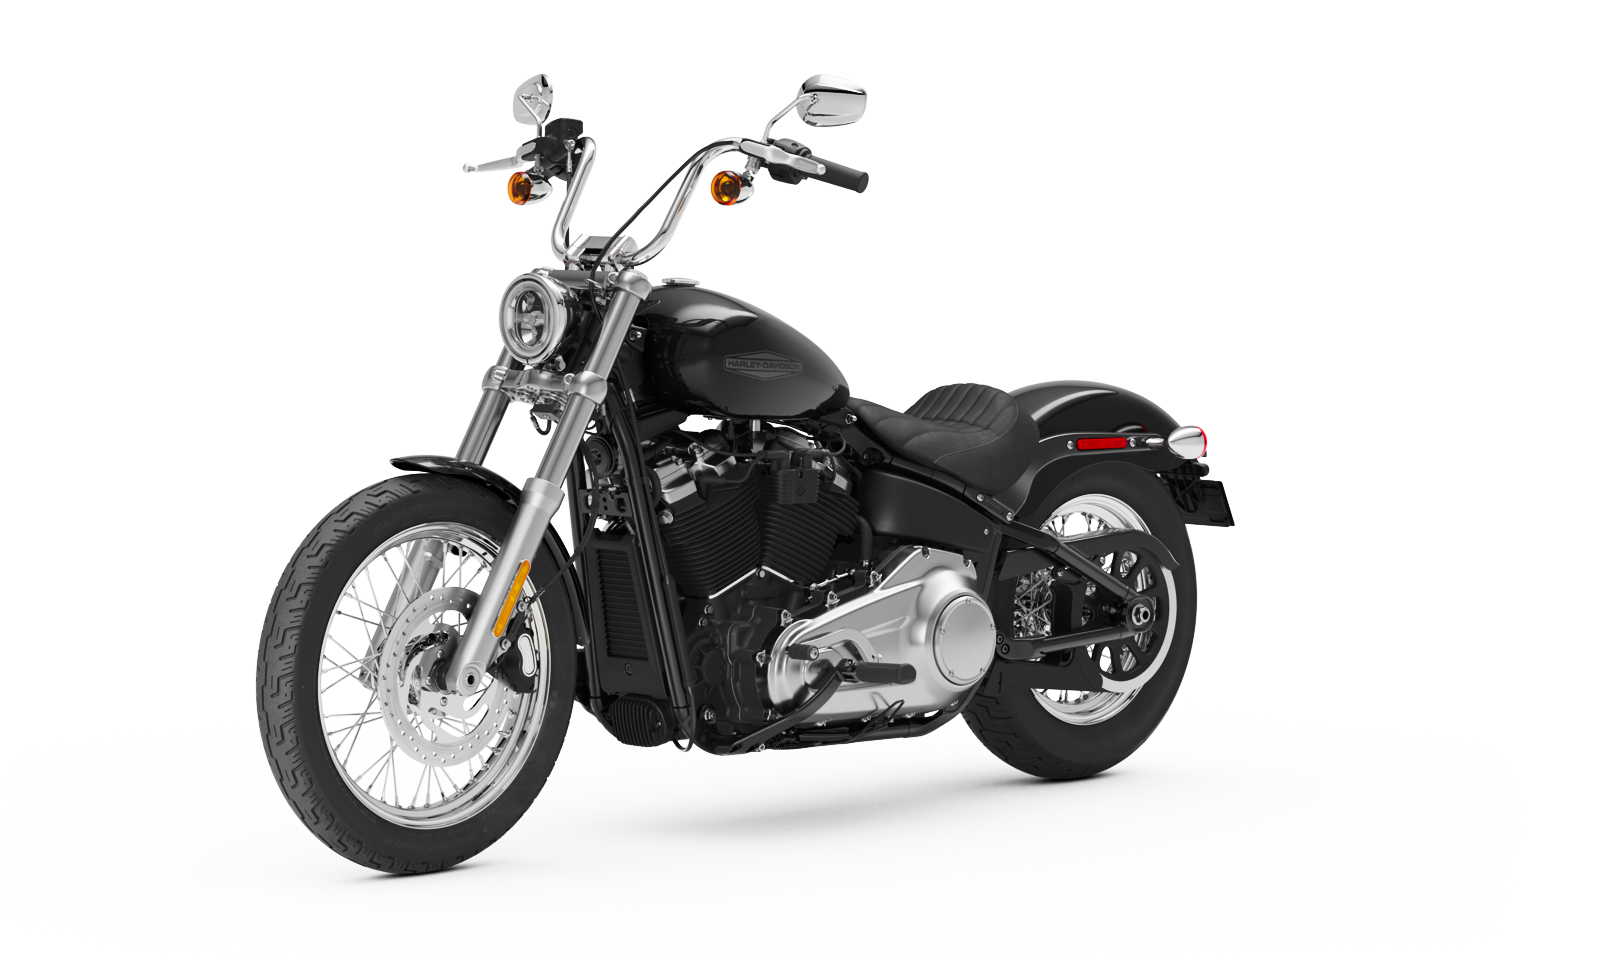 Kit de servicio técnico Rev Harley Davidson se ajusta de 1999-2014 modelos Softail 